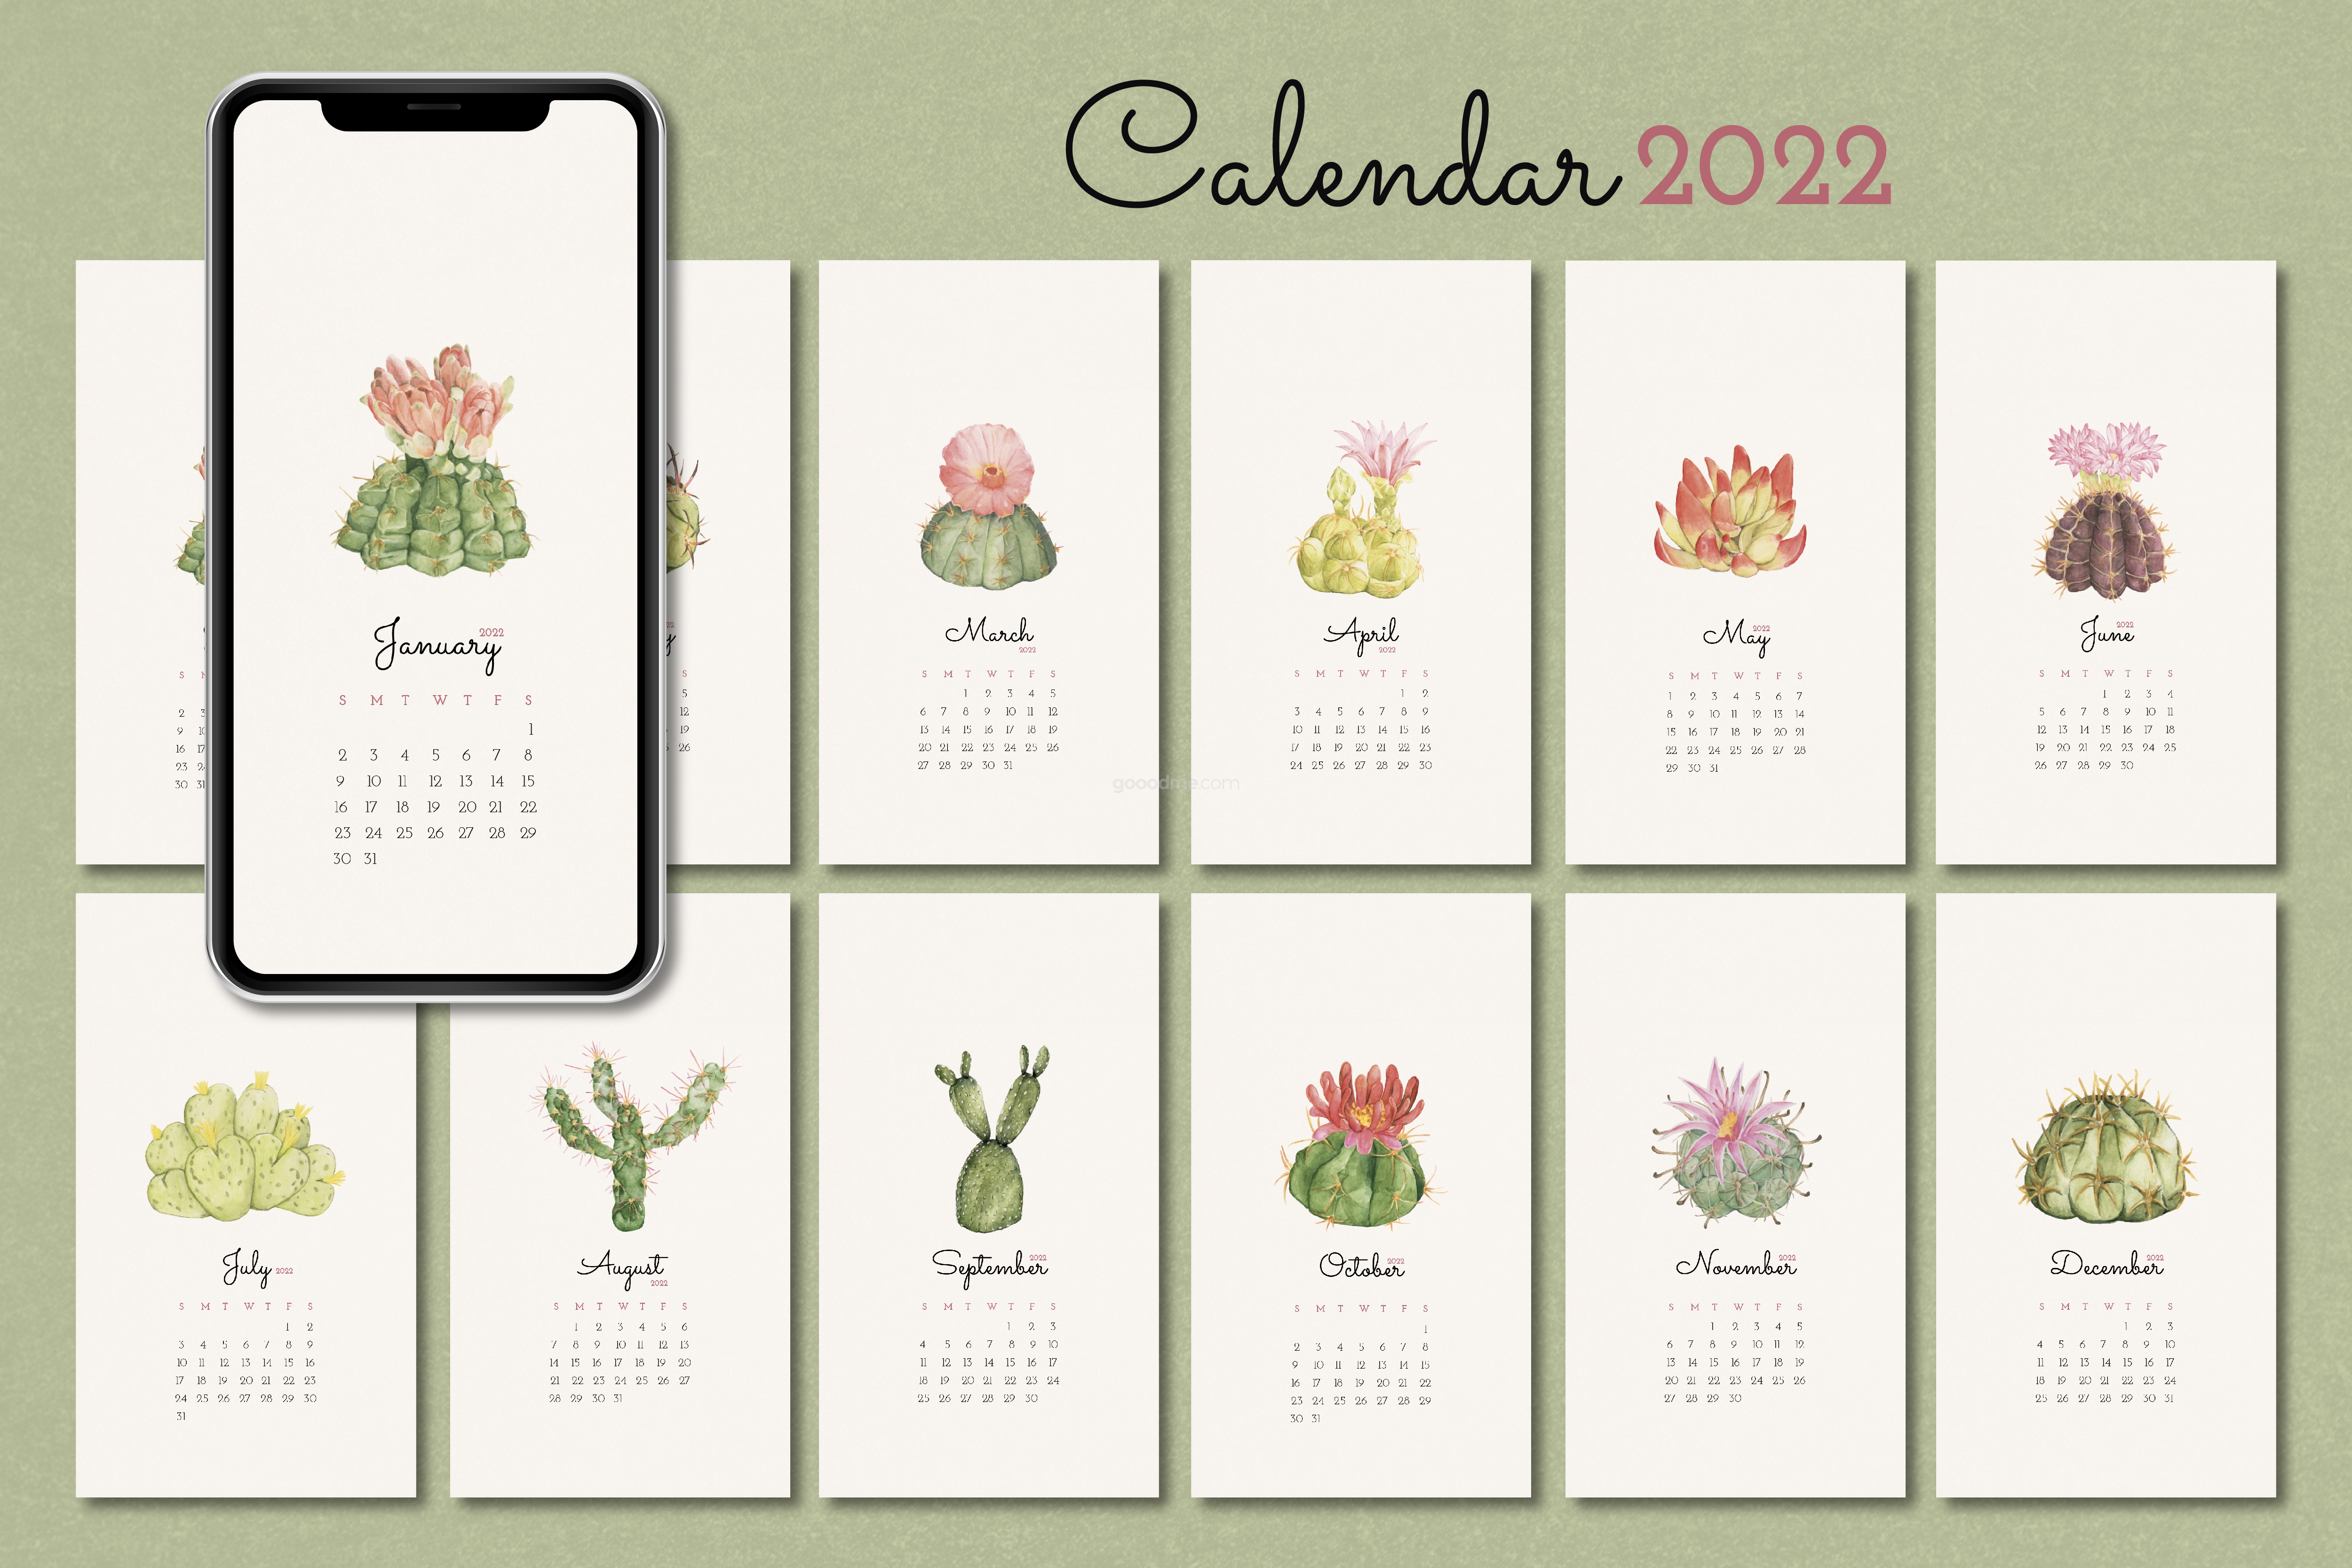 785 清新花卉多肉植物2022挂历设计矢量素材模板botanical 2022 monthly calendar template cactus iphone wallpaper vector set